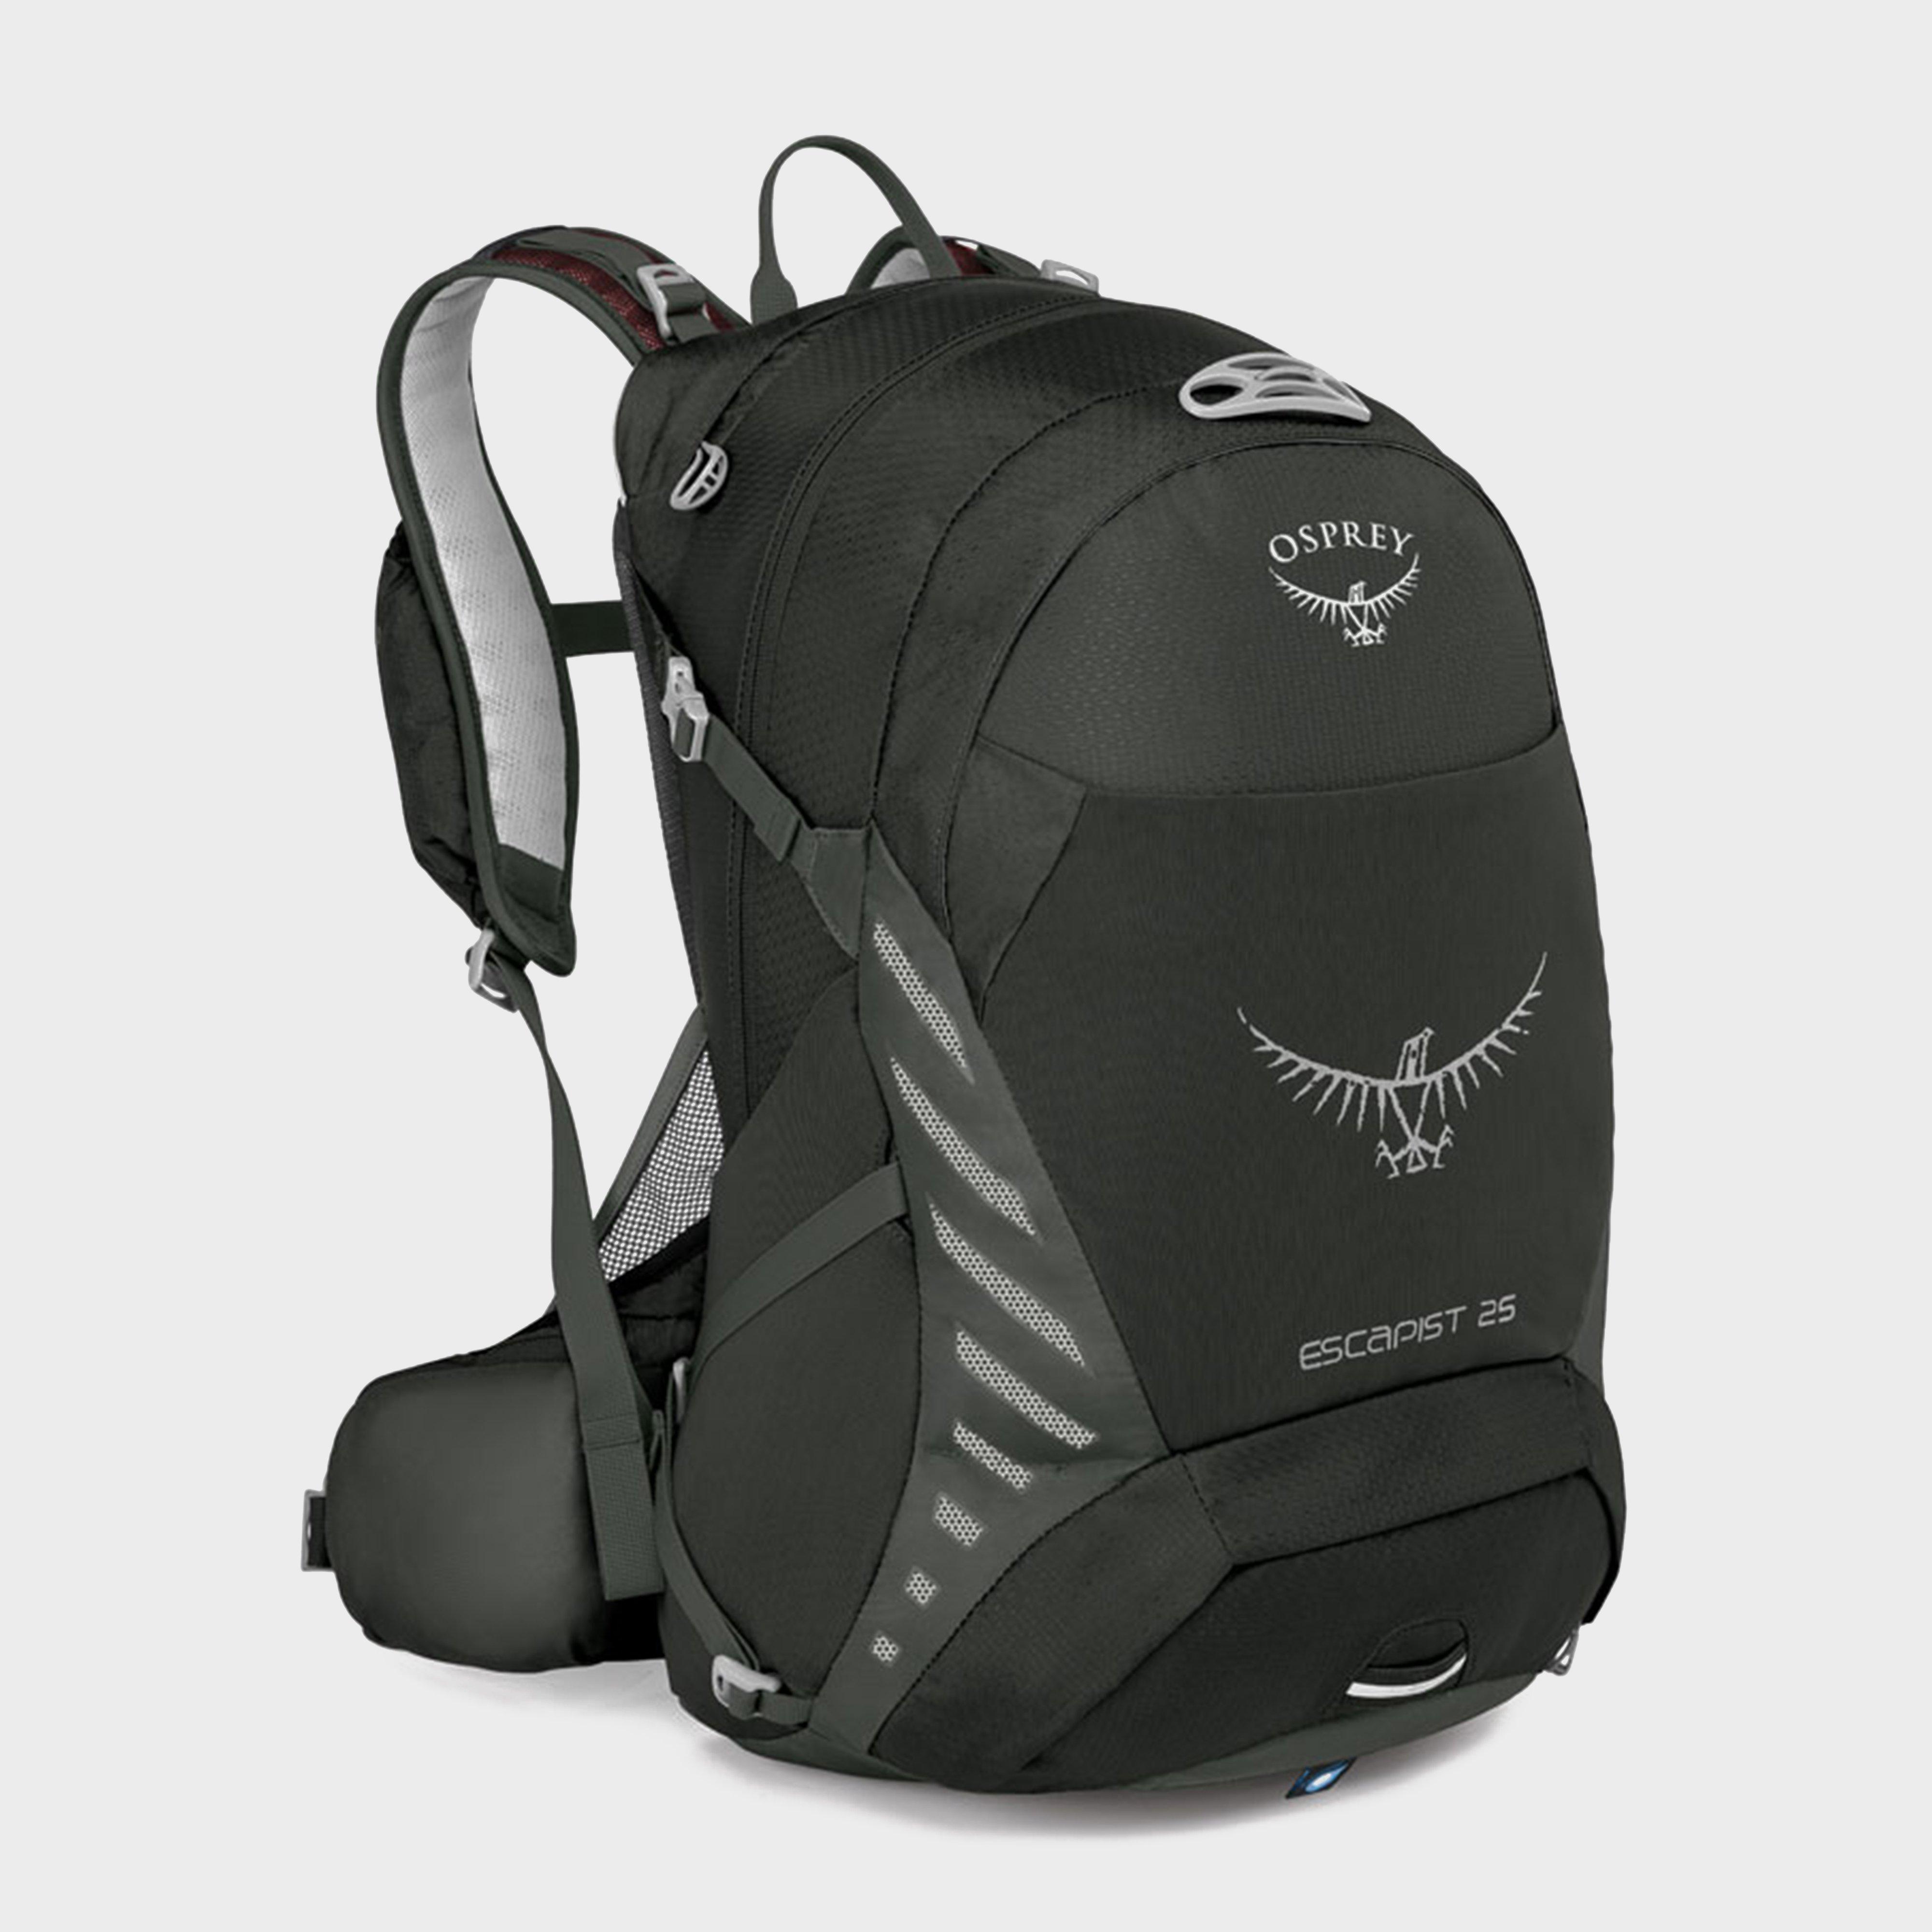 osprey travel bag sale